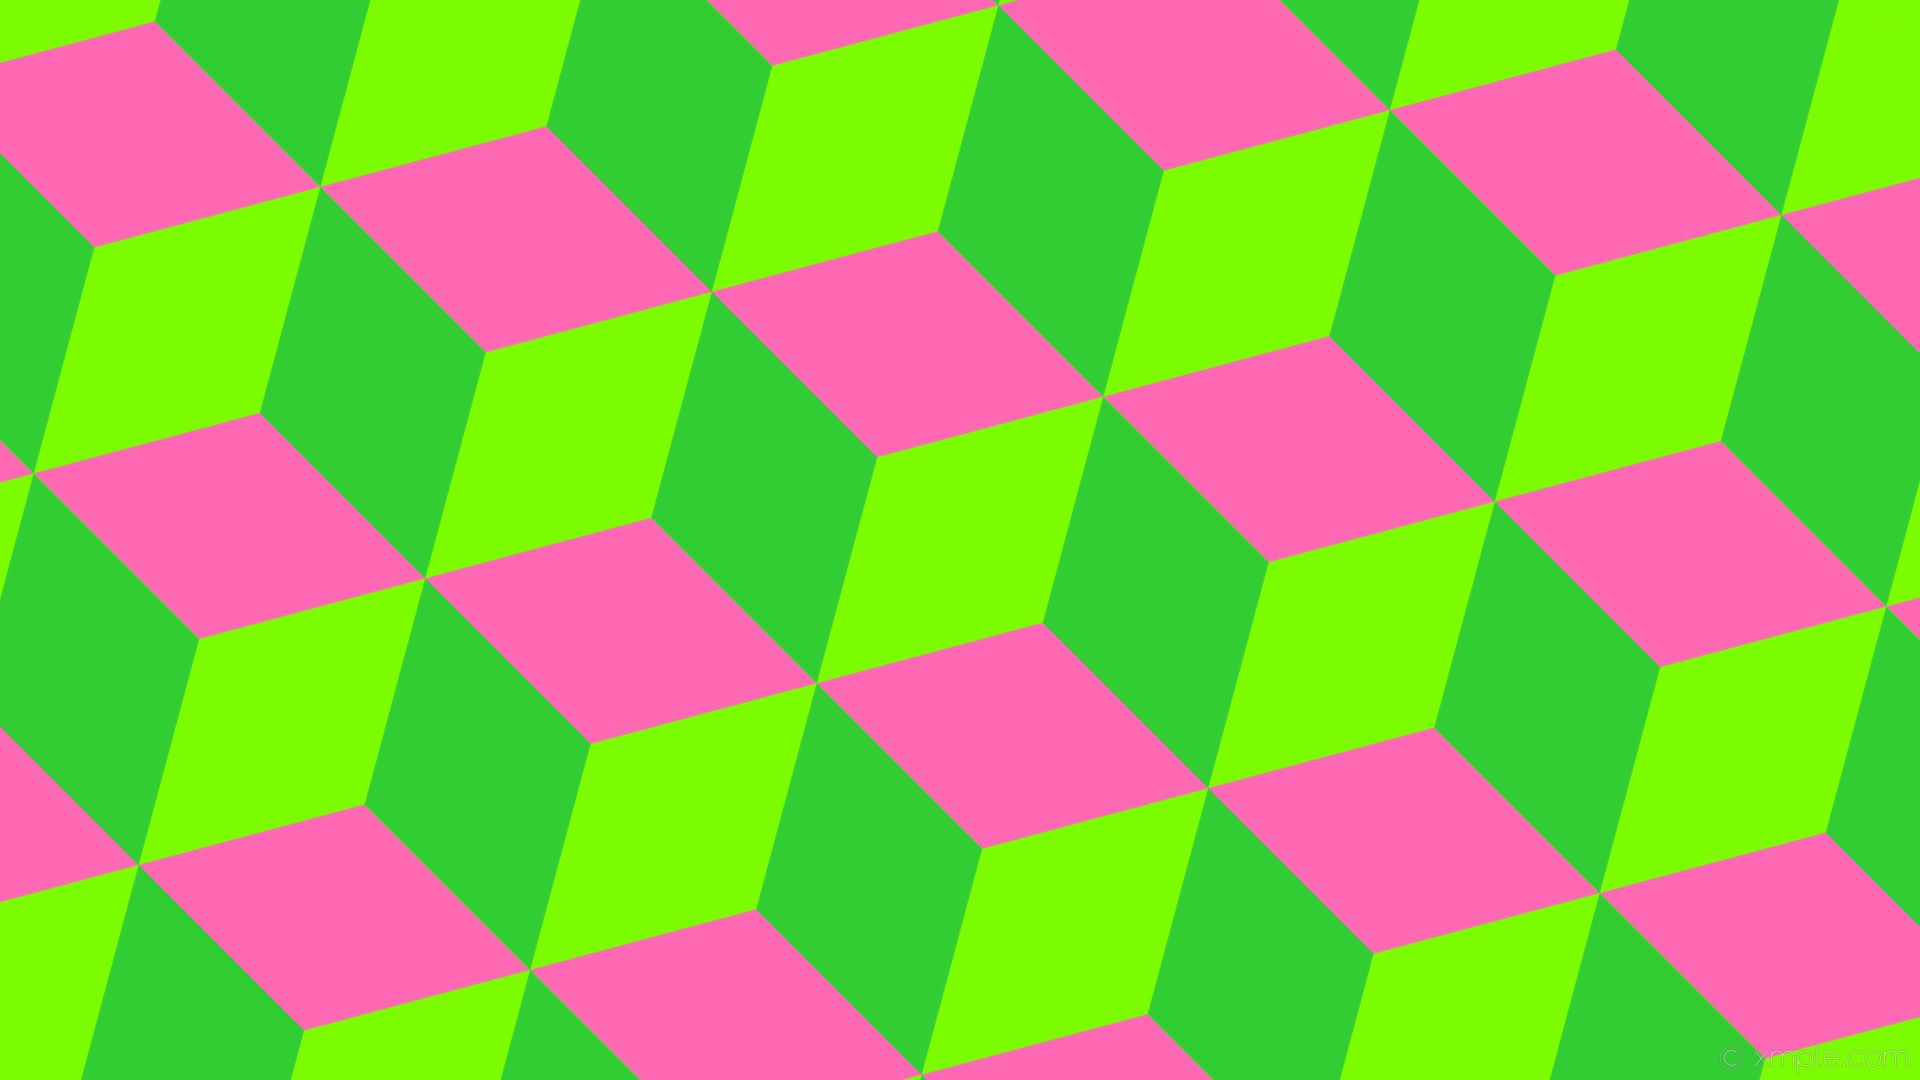 1920x1080 wallpaper 3d cubes green pink lawn green hot pink lime green #7cfc00  #ff69b4 #